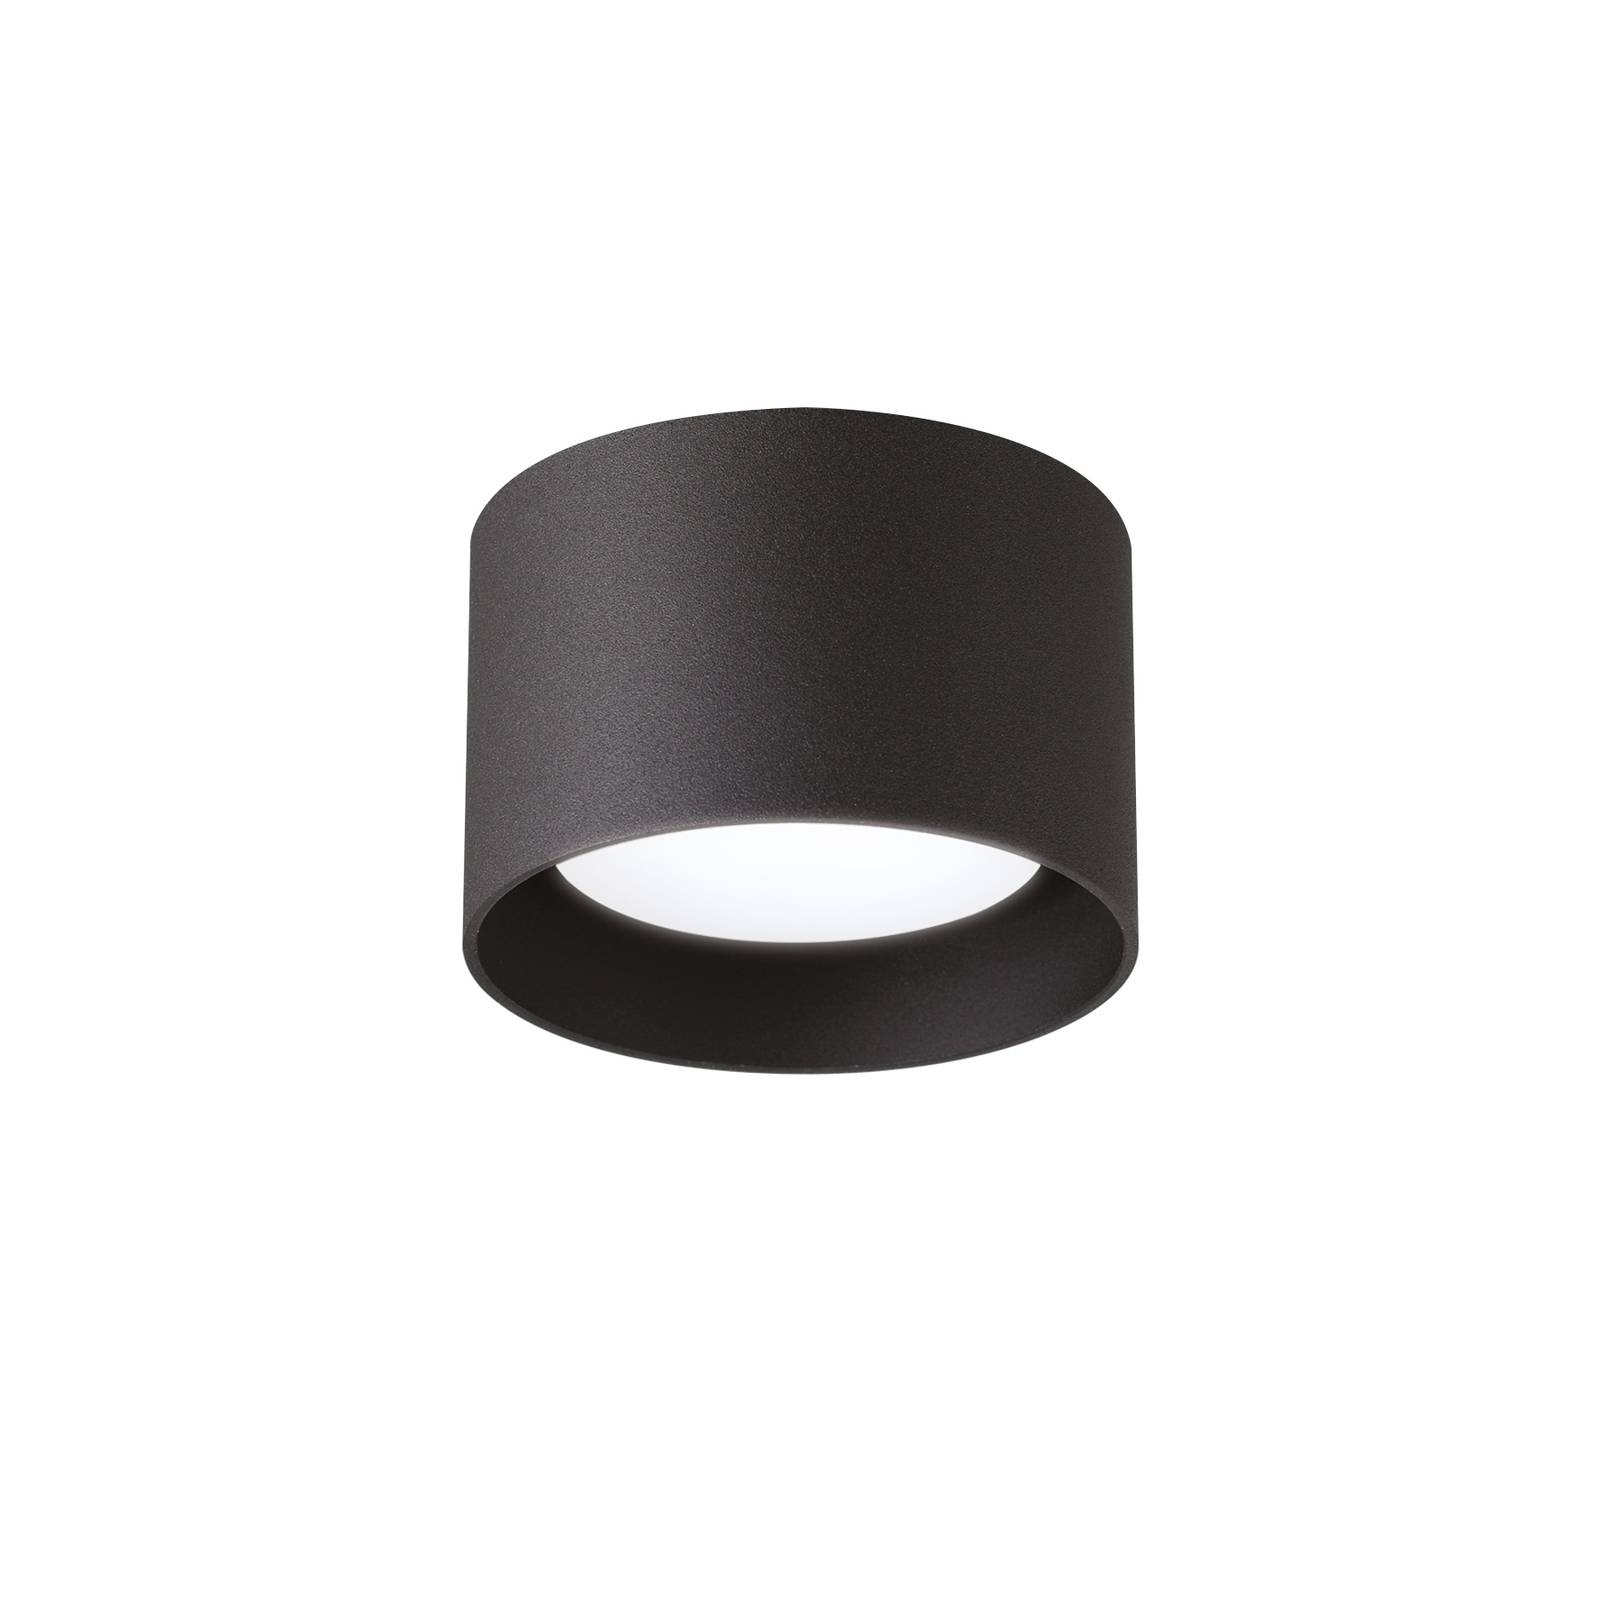 Bodové svietidlo Ideal Lux Spike Round, čierne, hliník, Ø 10 cm